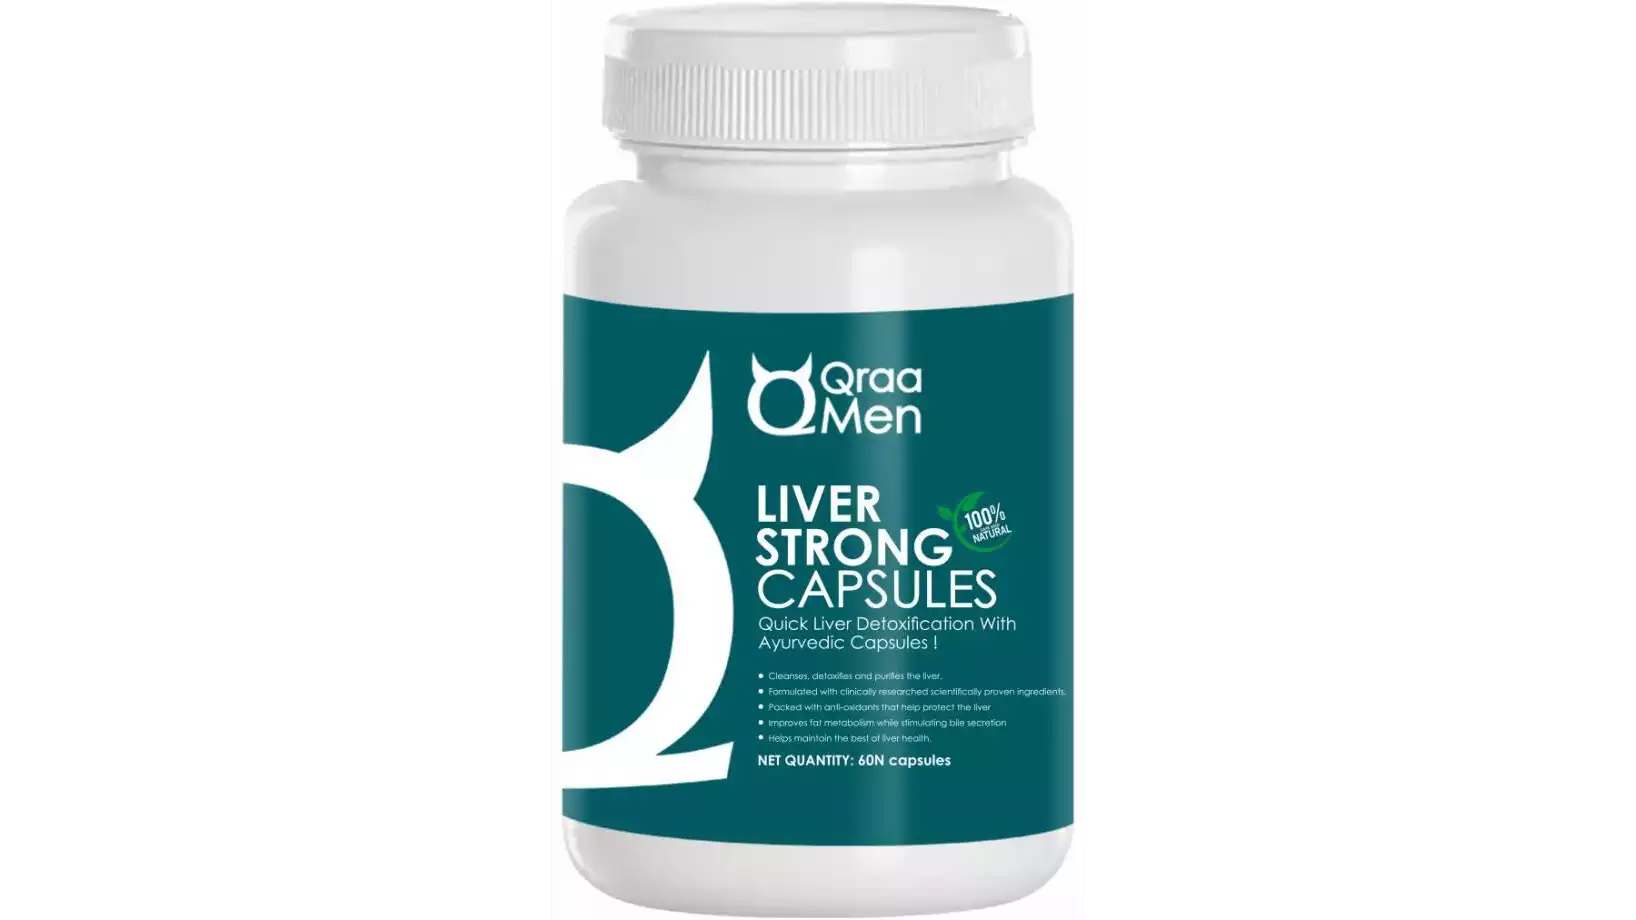 QraaMen Liver Strong Capsules (60caps)